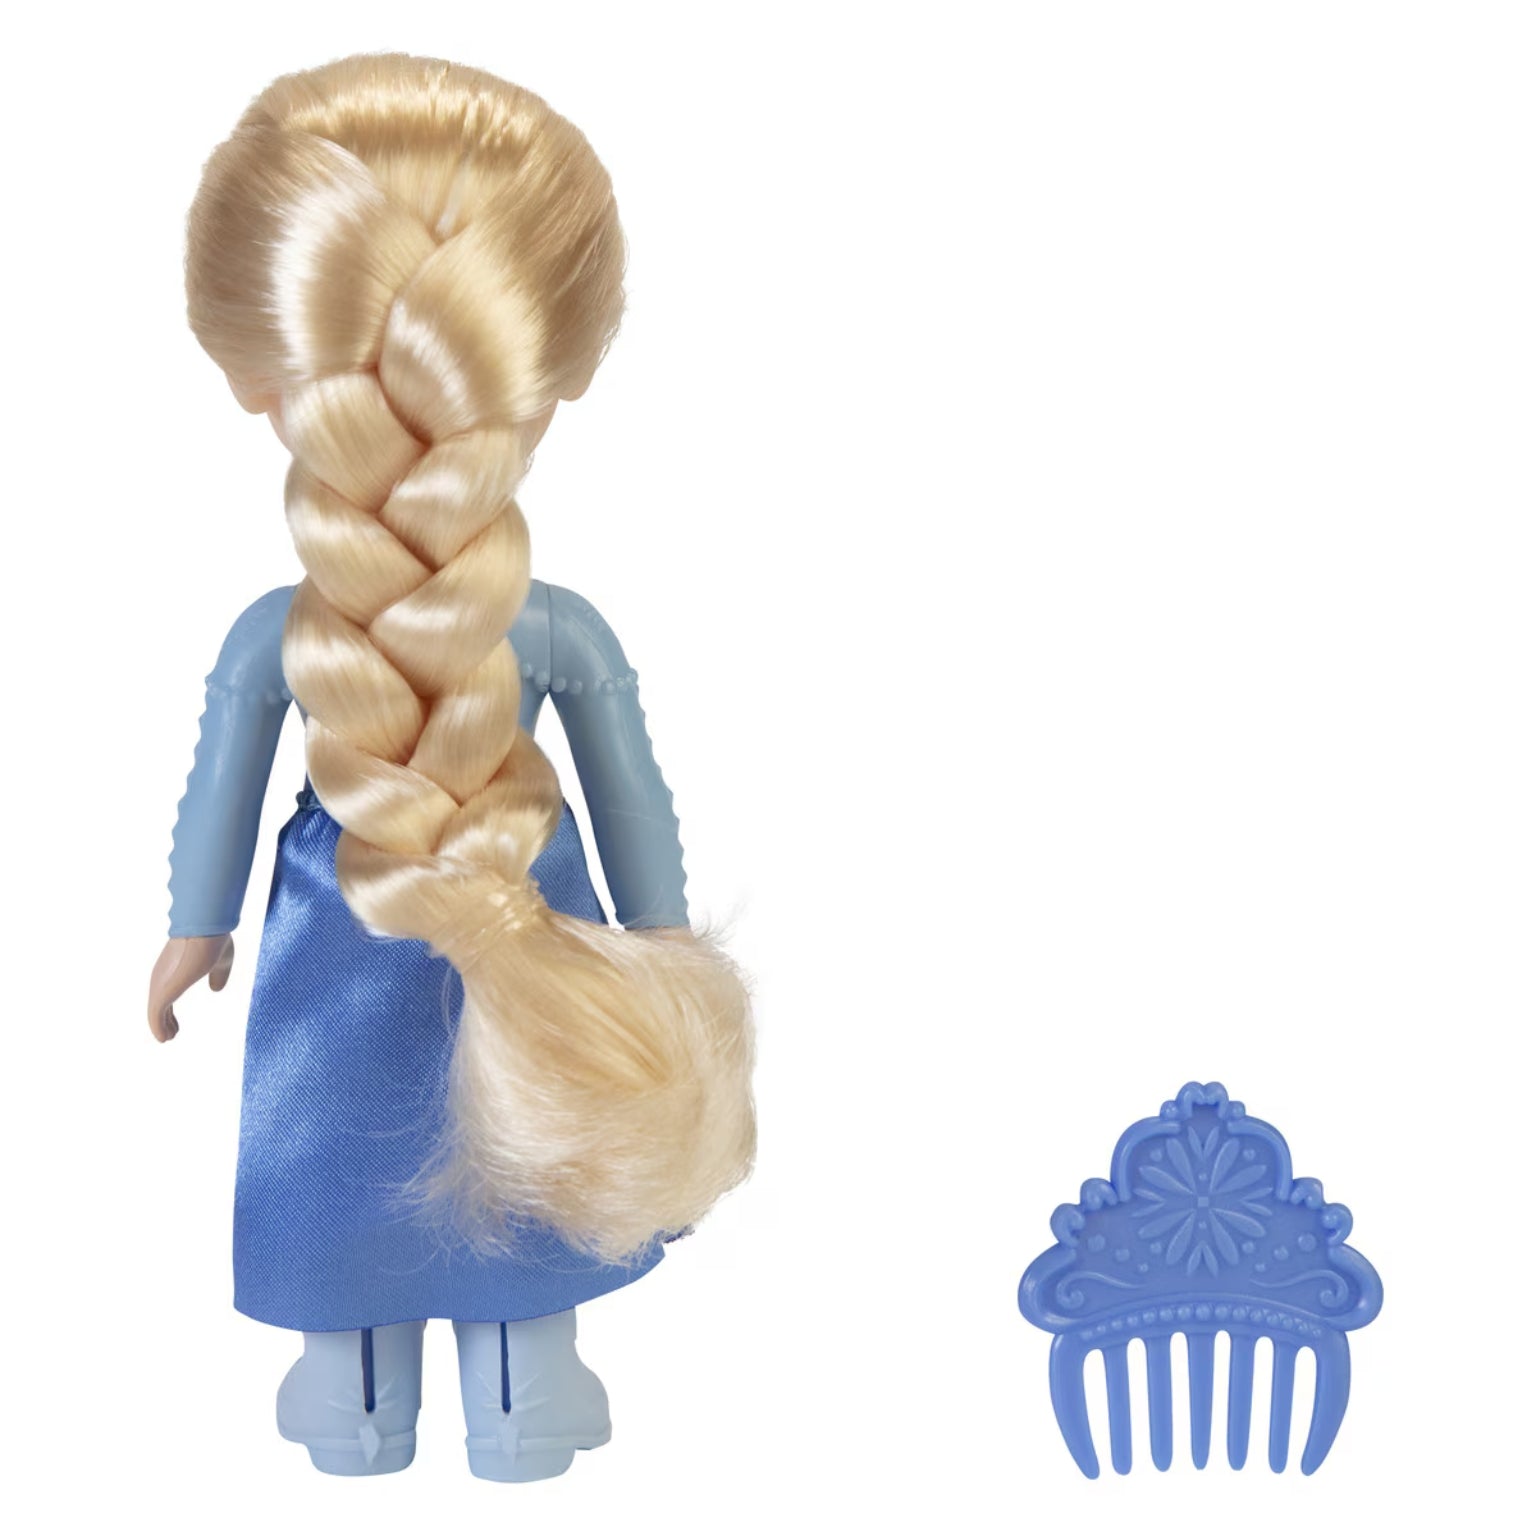 Boneca Princesa Disney – Elsa com vestido azul